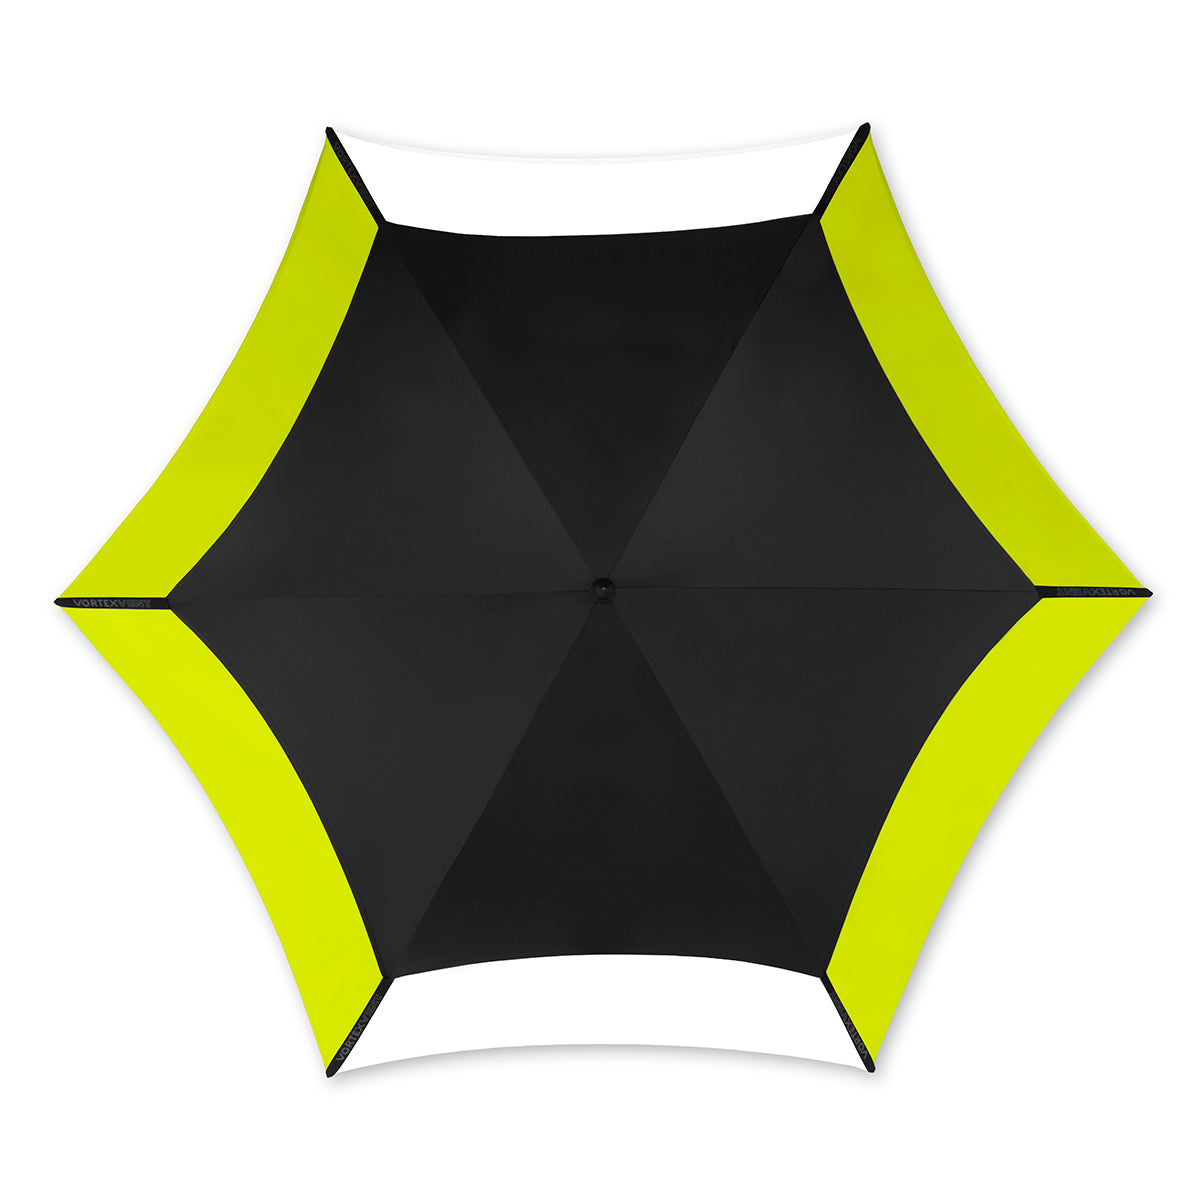 Vortex Vent XL 68″ Golf Umbrella